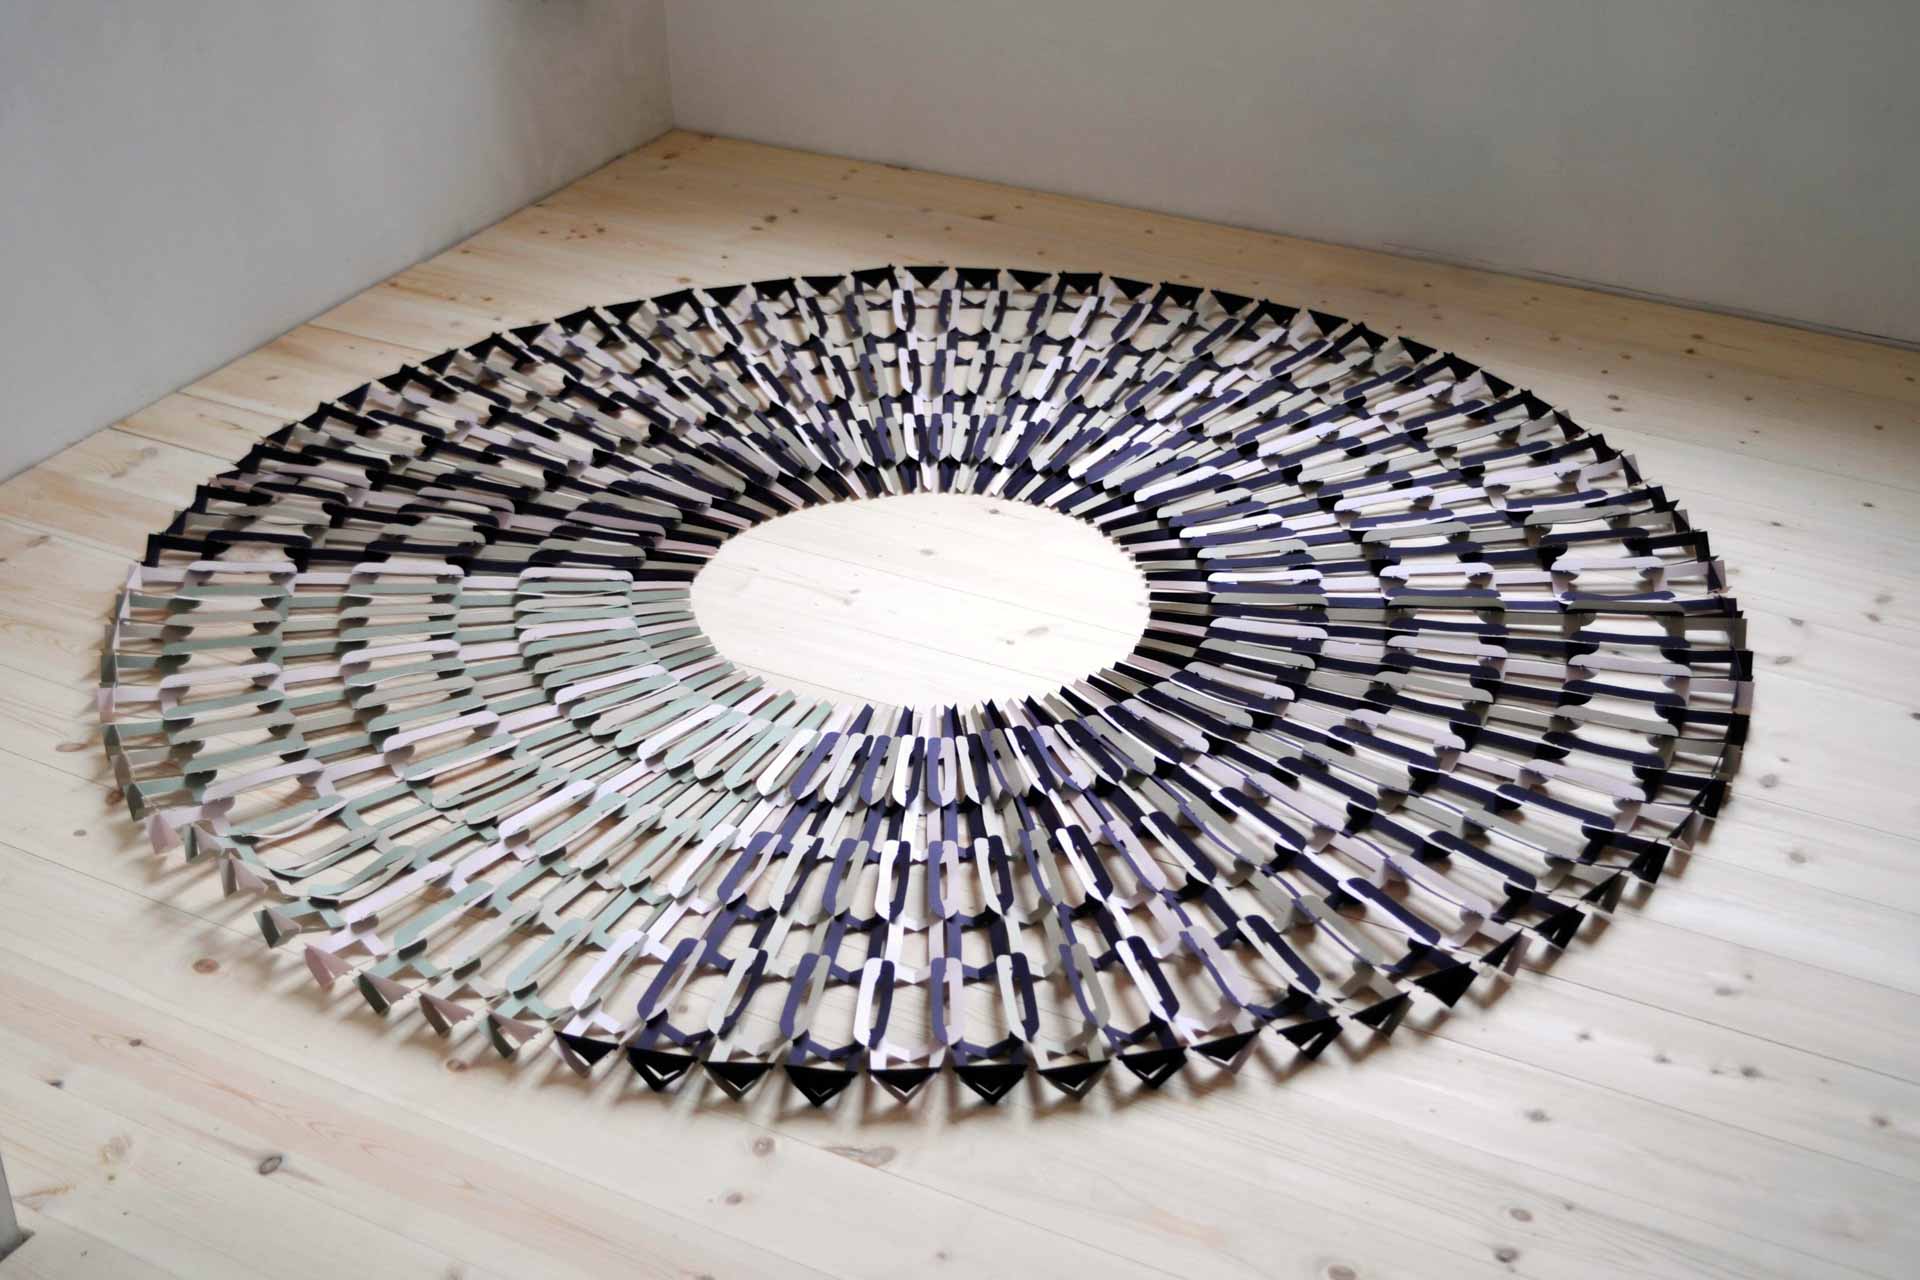 Cercle - Papier - Découpe au cutter numérique, assemblage par crochet "Paperoko" - H.60 x L.35 x P.35 cm > H.3 x L.160 x P.160 cm -
2023